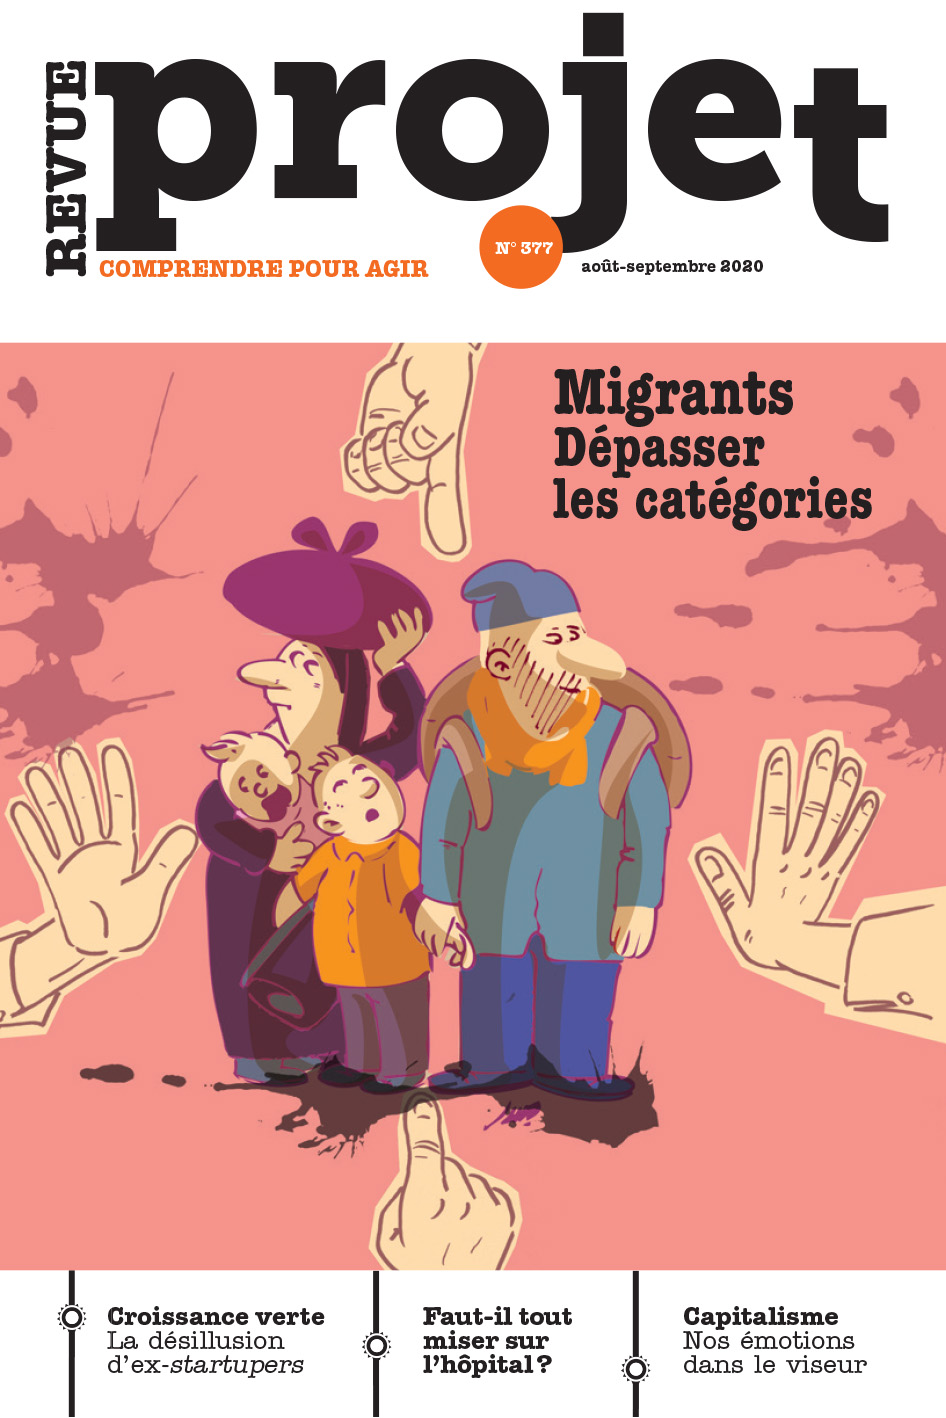 Migrants : dépasser les catégories